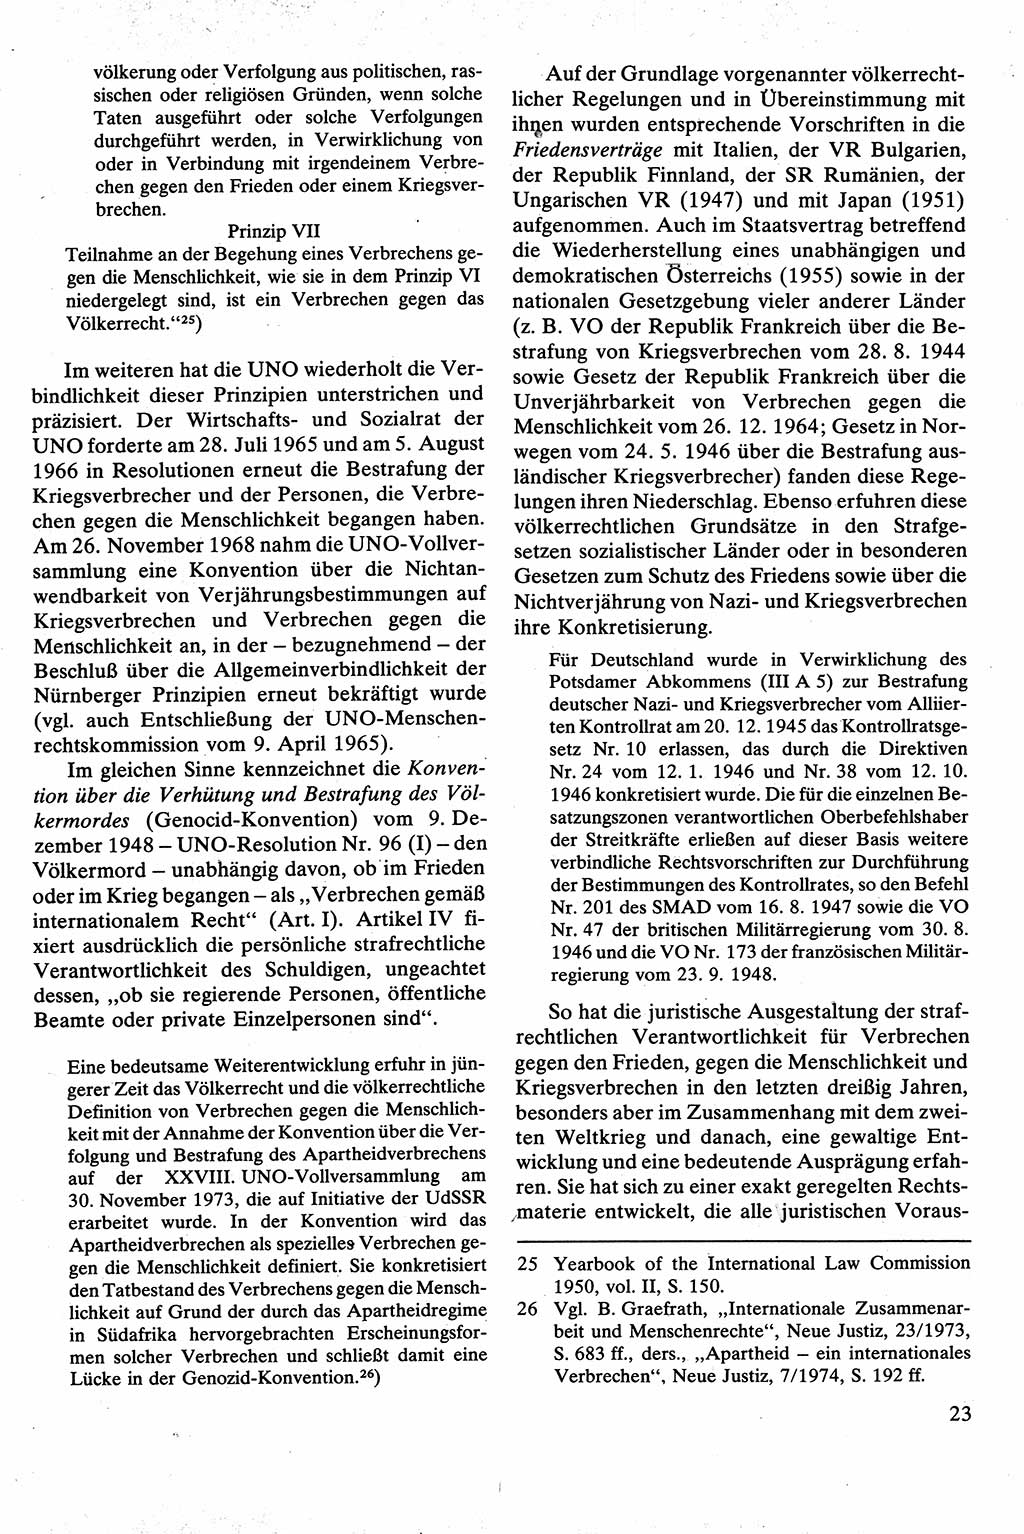 Strafrecht [Deutsche Demokratische Republik (DDR)], Besonderer Teil, Lehrbuch 1981, Seite 23 (Strafr. DDR BT Lb. 1981, S. 23)